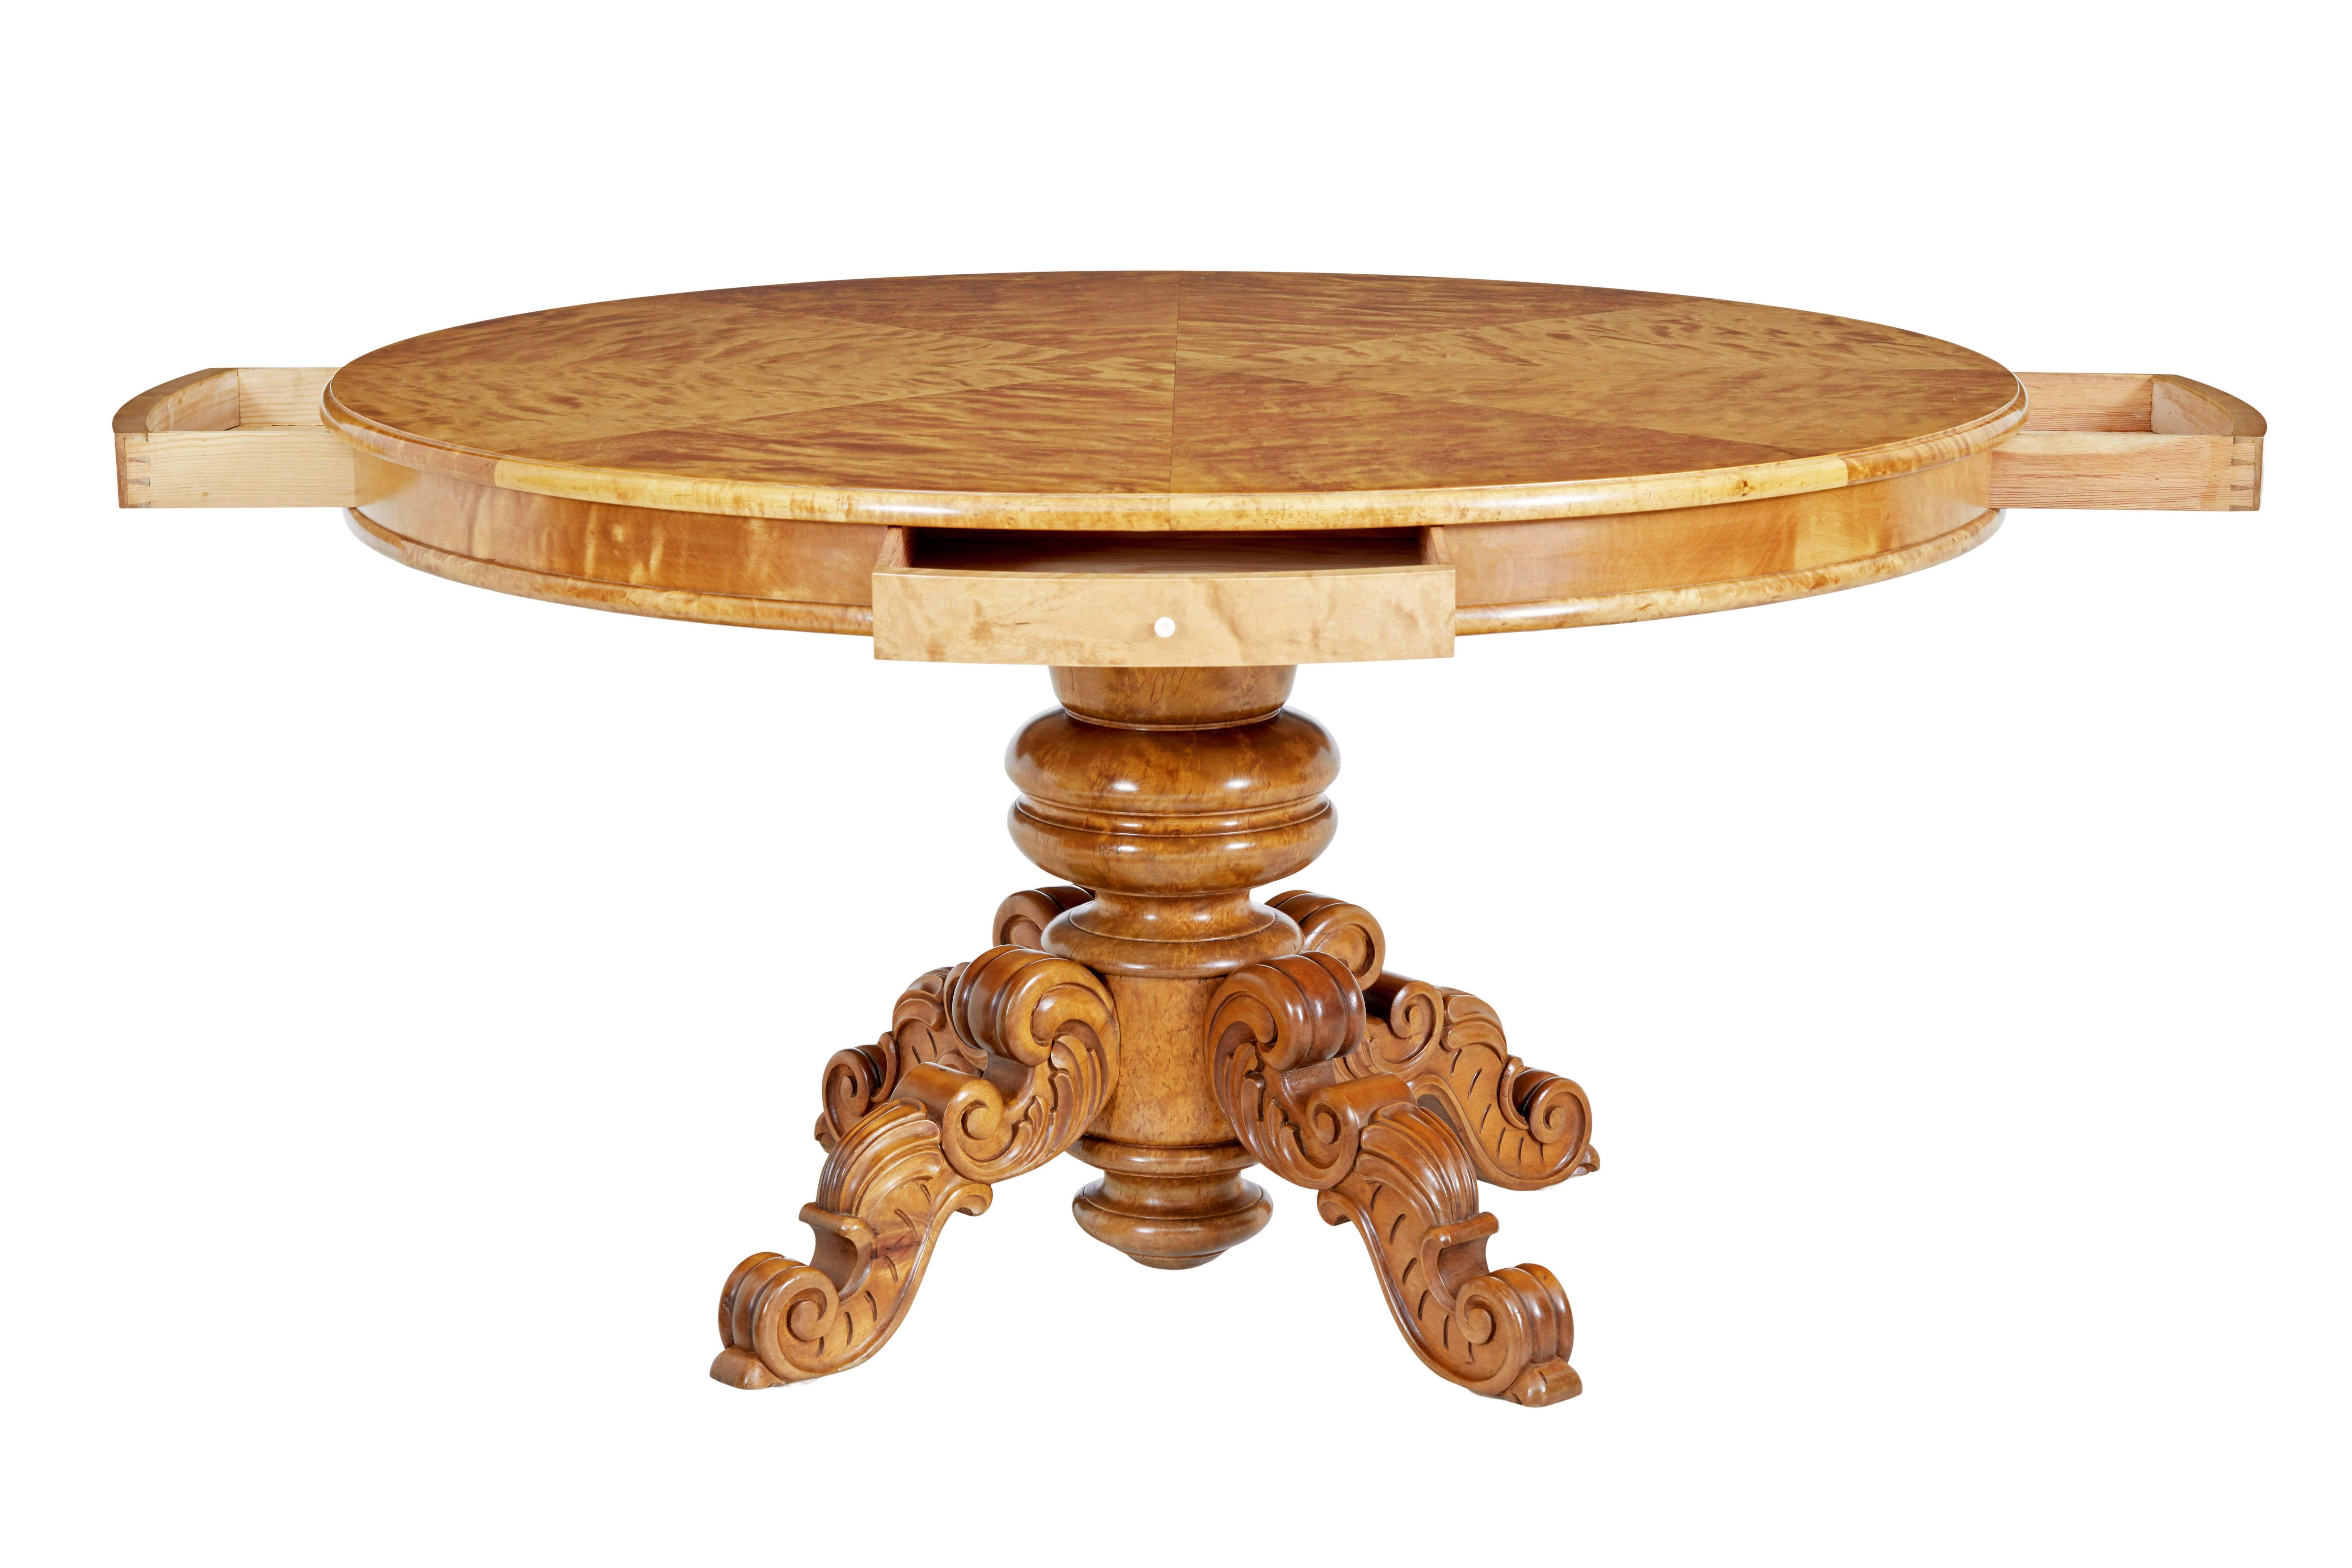 Table centrale en bouleau sculpté suédois du XIXe siècle, vers 1890.

Connue comme table de tambour, cette table peut également servir de table de salle à manger.

Grande table centrale circulaire, avec 4 tiroirs peu profonds placés à des positions